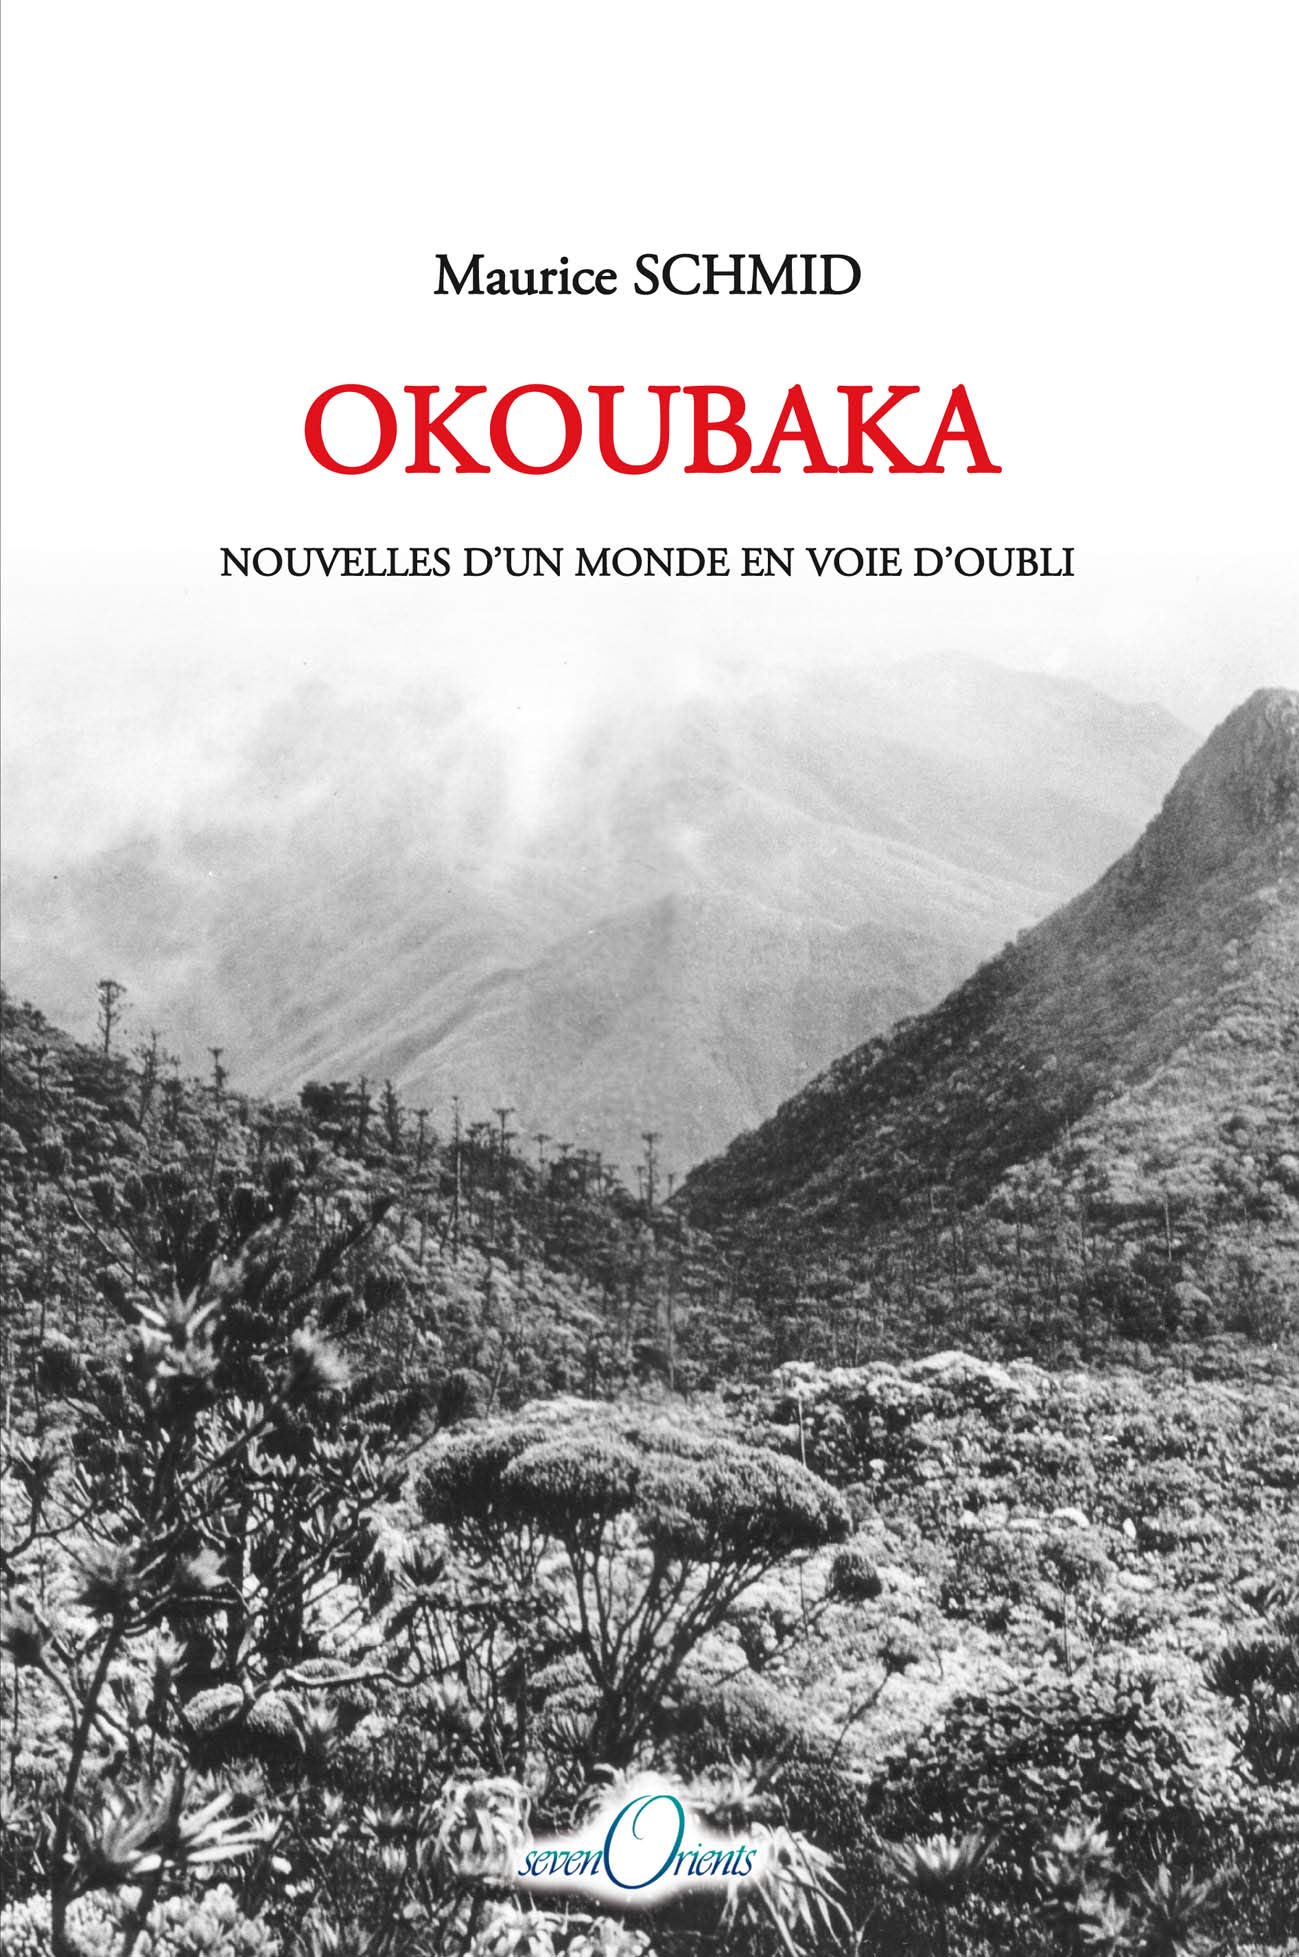 Okoubaka. Nouvelles d'un monde en voie d'oubli, 2012, 191 p. 